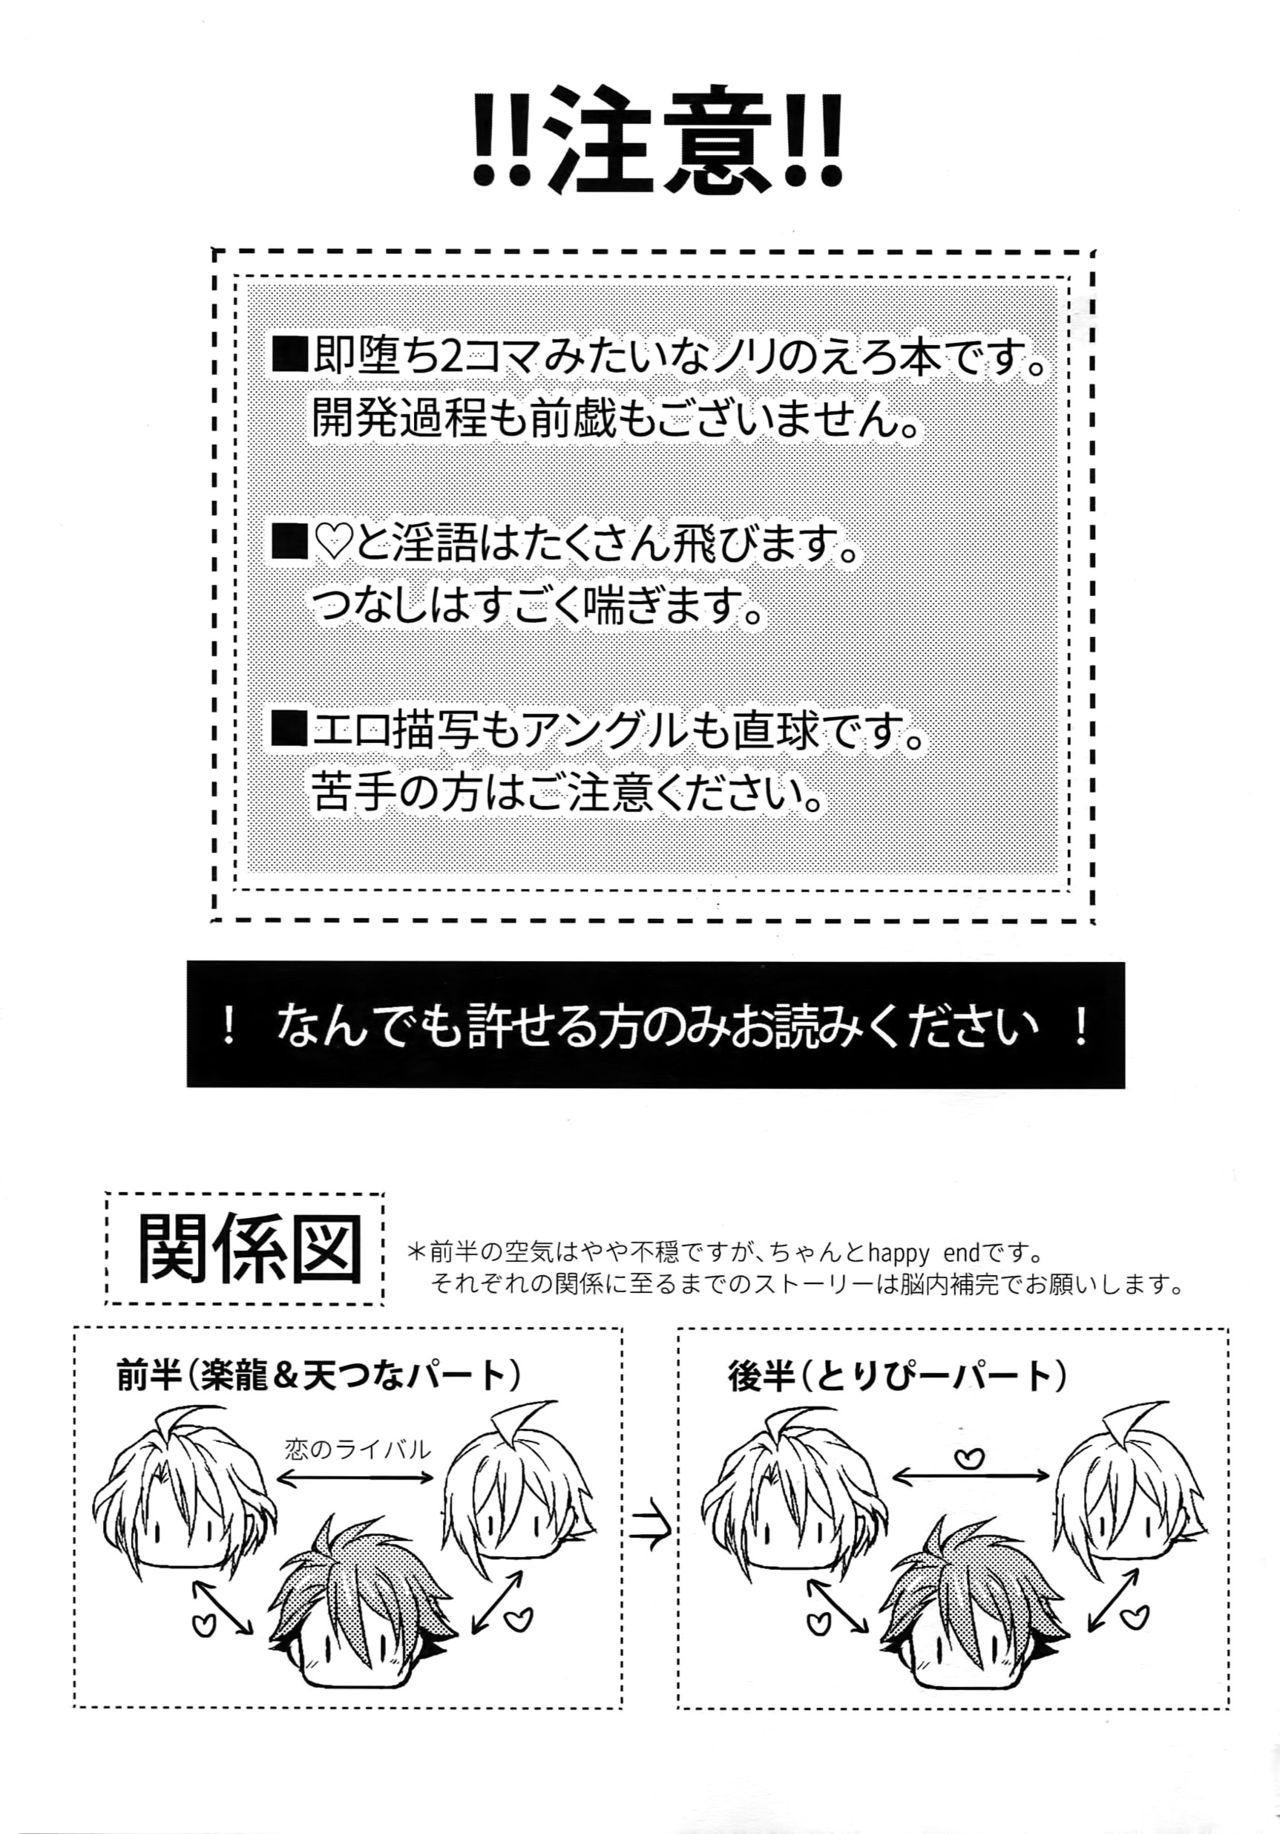 Comedor Seichou Kiroku - Idolish7 Spandex - Page 2